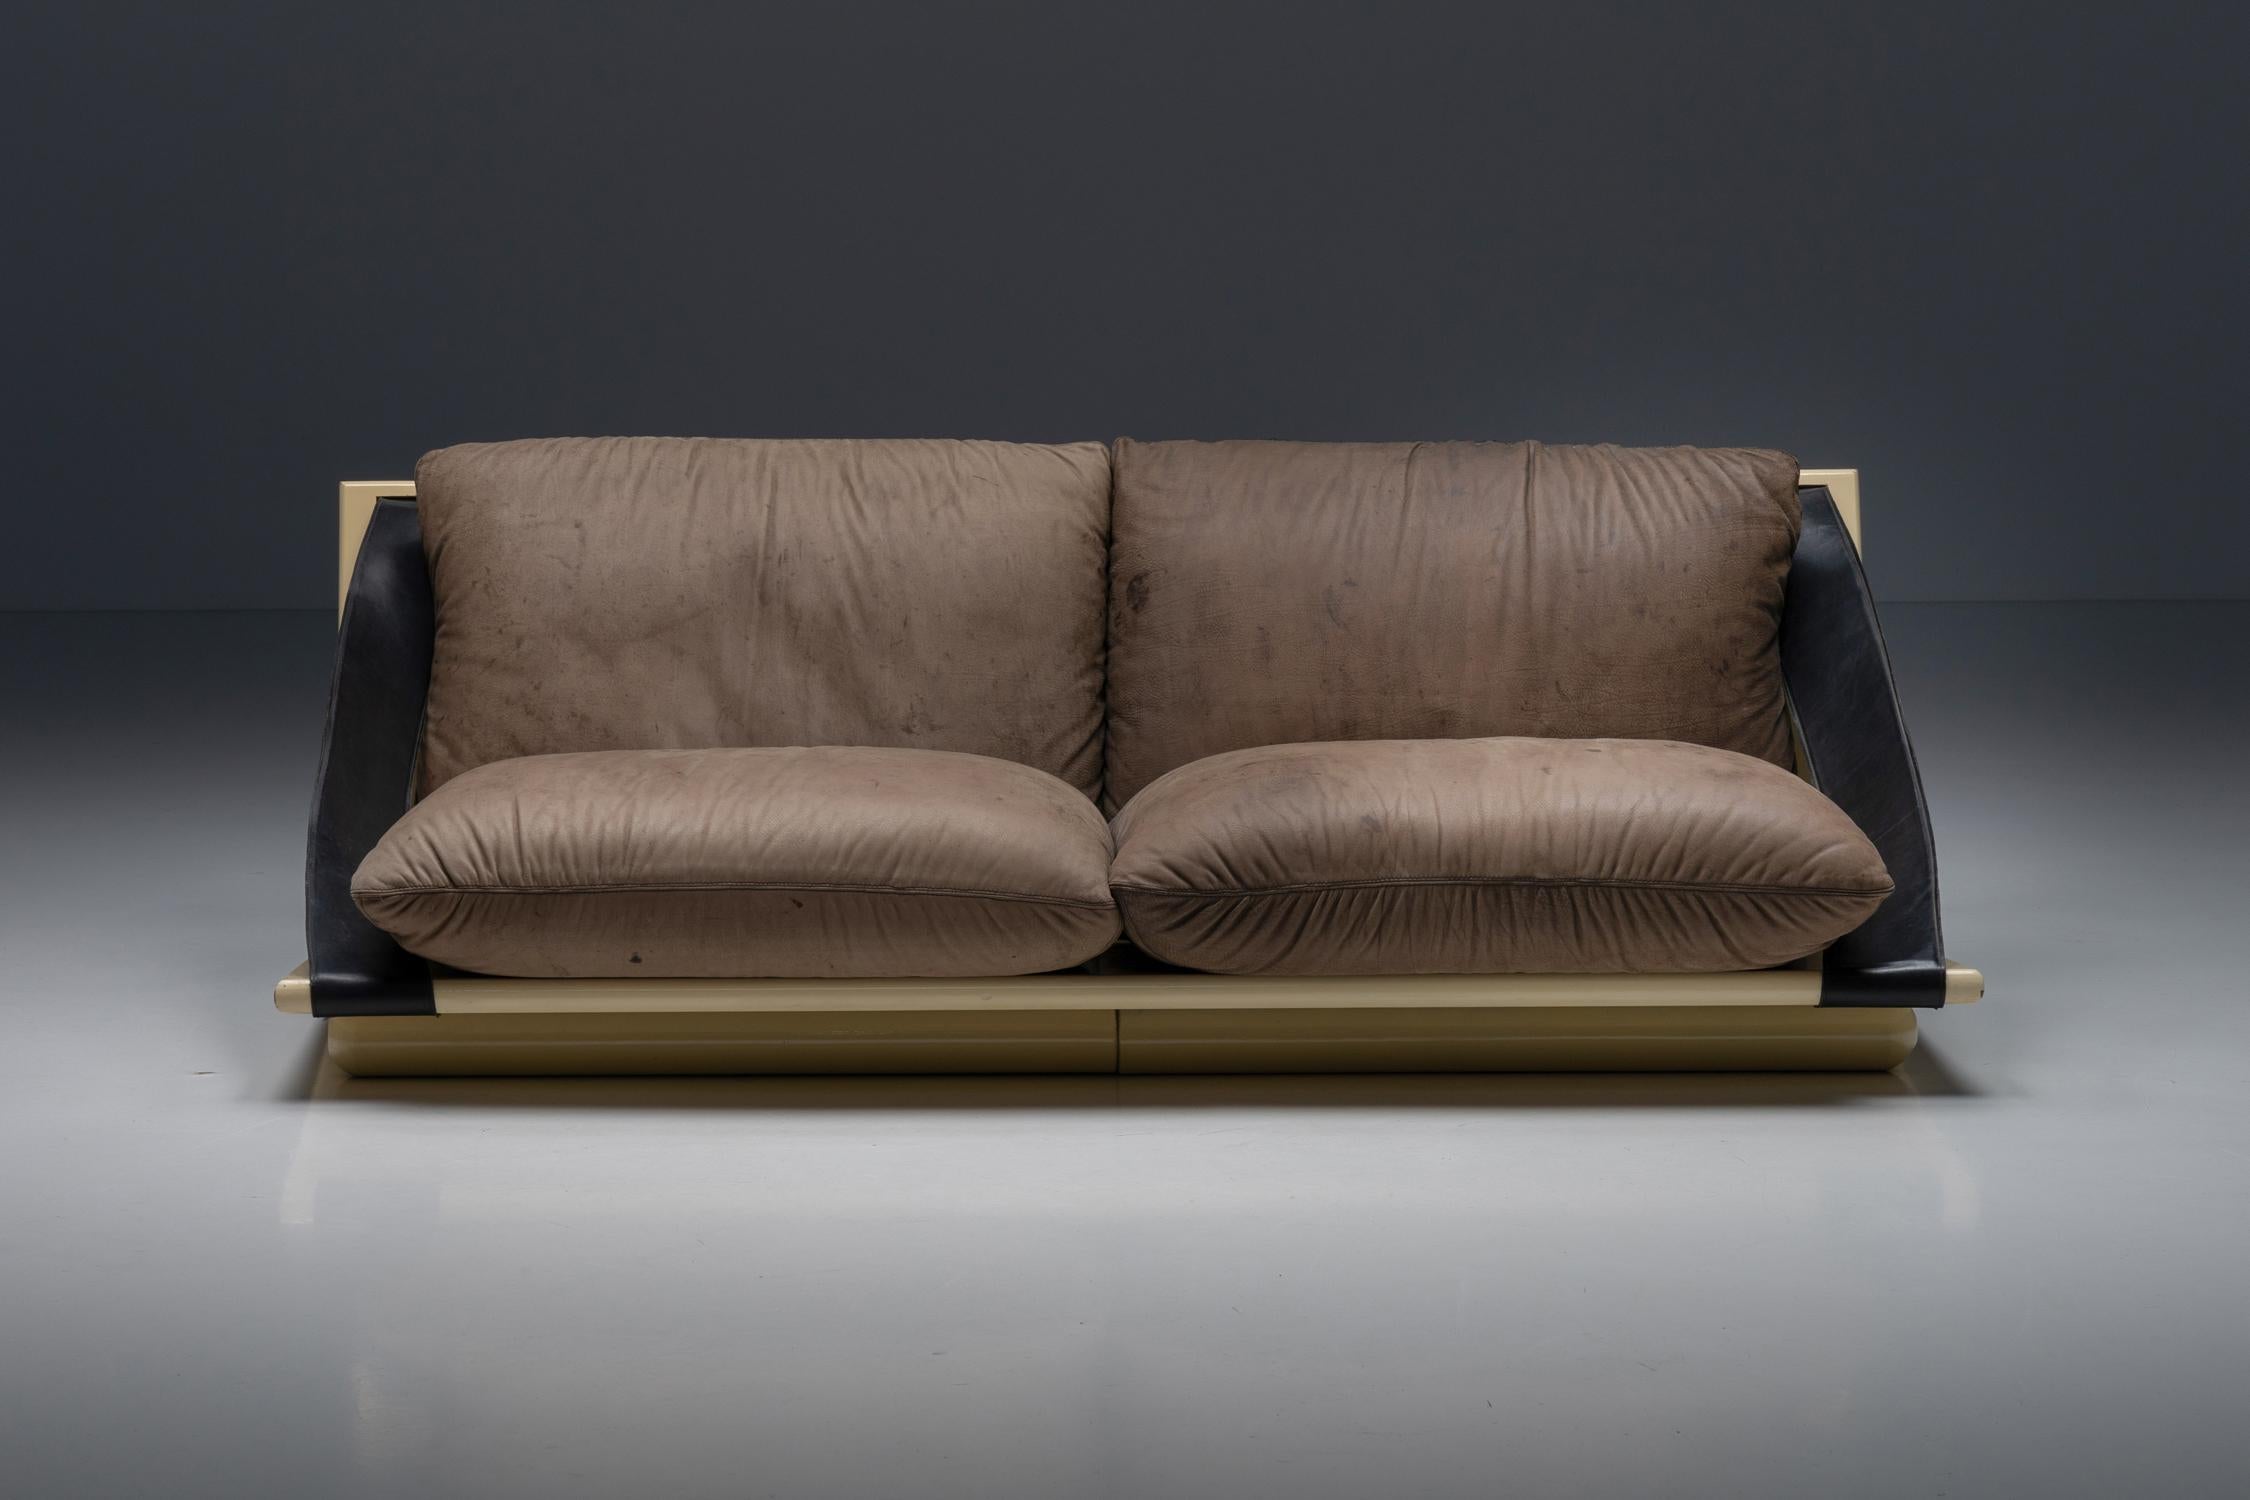 Italienisches Design; Lack; Leder; Lederriemen; Kissen; Lounge-Sessel; Zweisitzer; 1970er Jahre; Mid-Century Modern; 

Bequemes italienisches Zweisitzersofa aus den 1970er Jahren. Der Rahmen besteht aus zwei lackierten rechteckigen Elementen, die